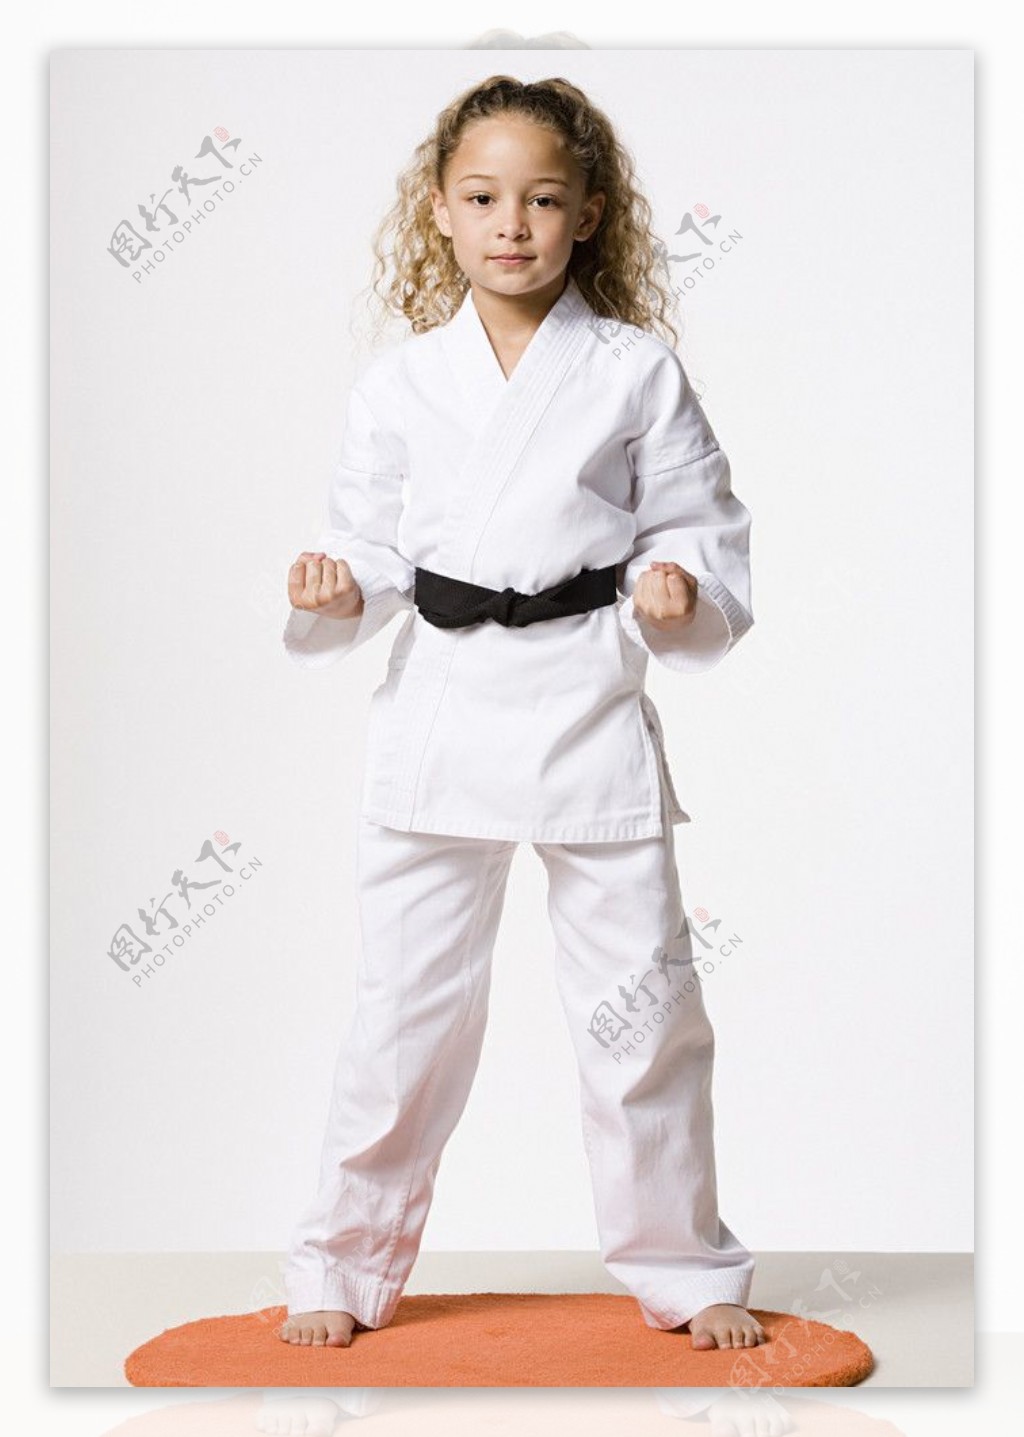 练武术的小女孩图片